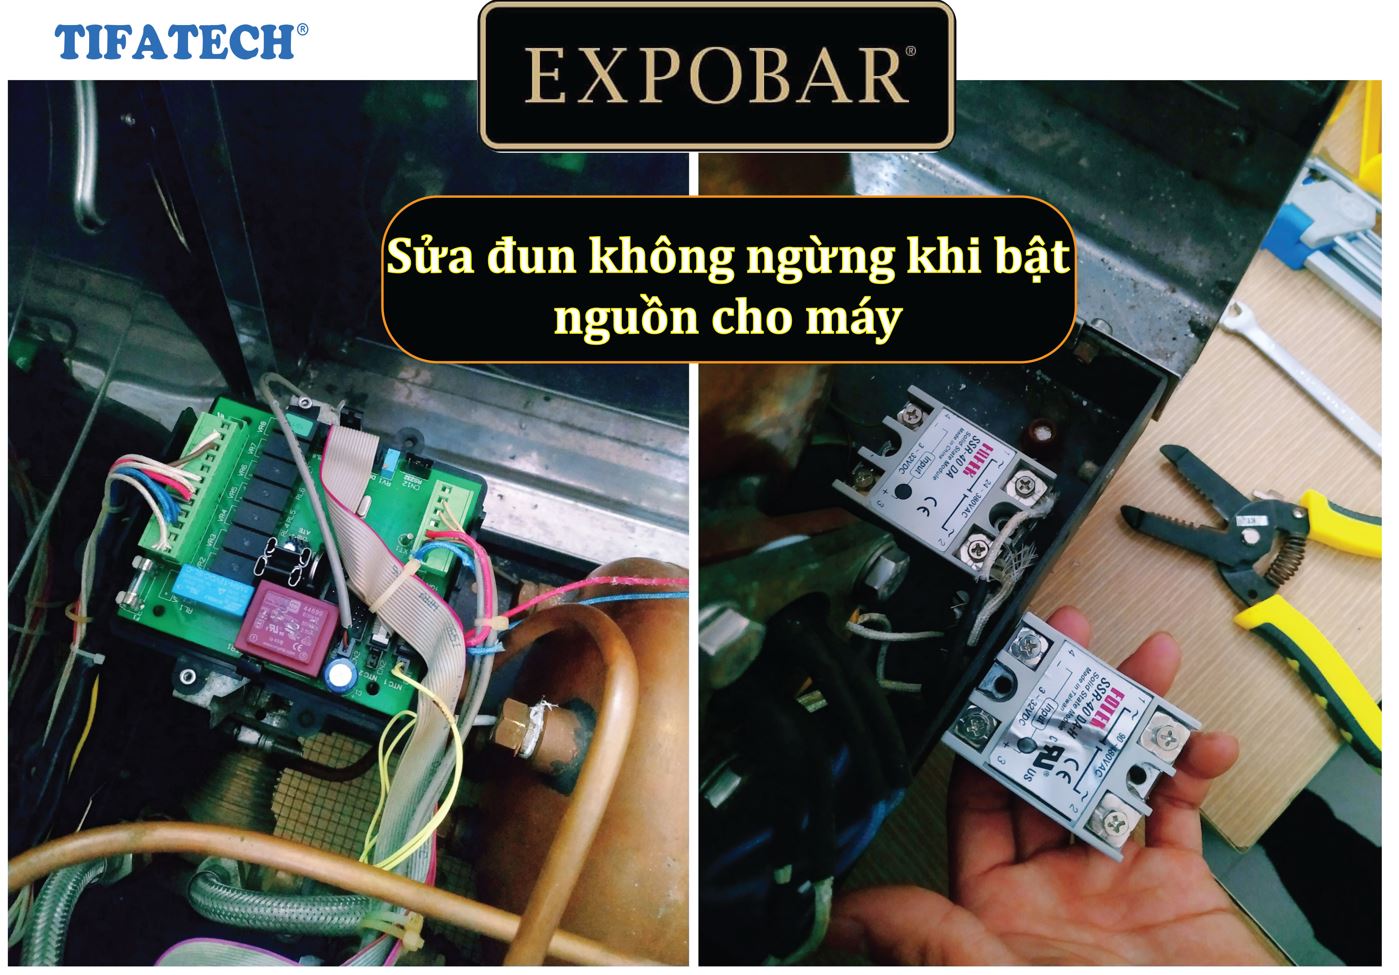 Sửa máy pha cà phê Expobar Đà Nẵng- Tifatech